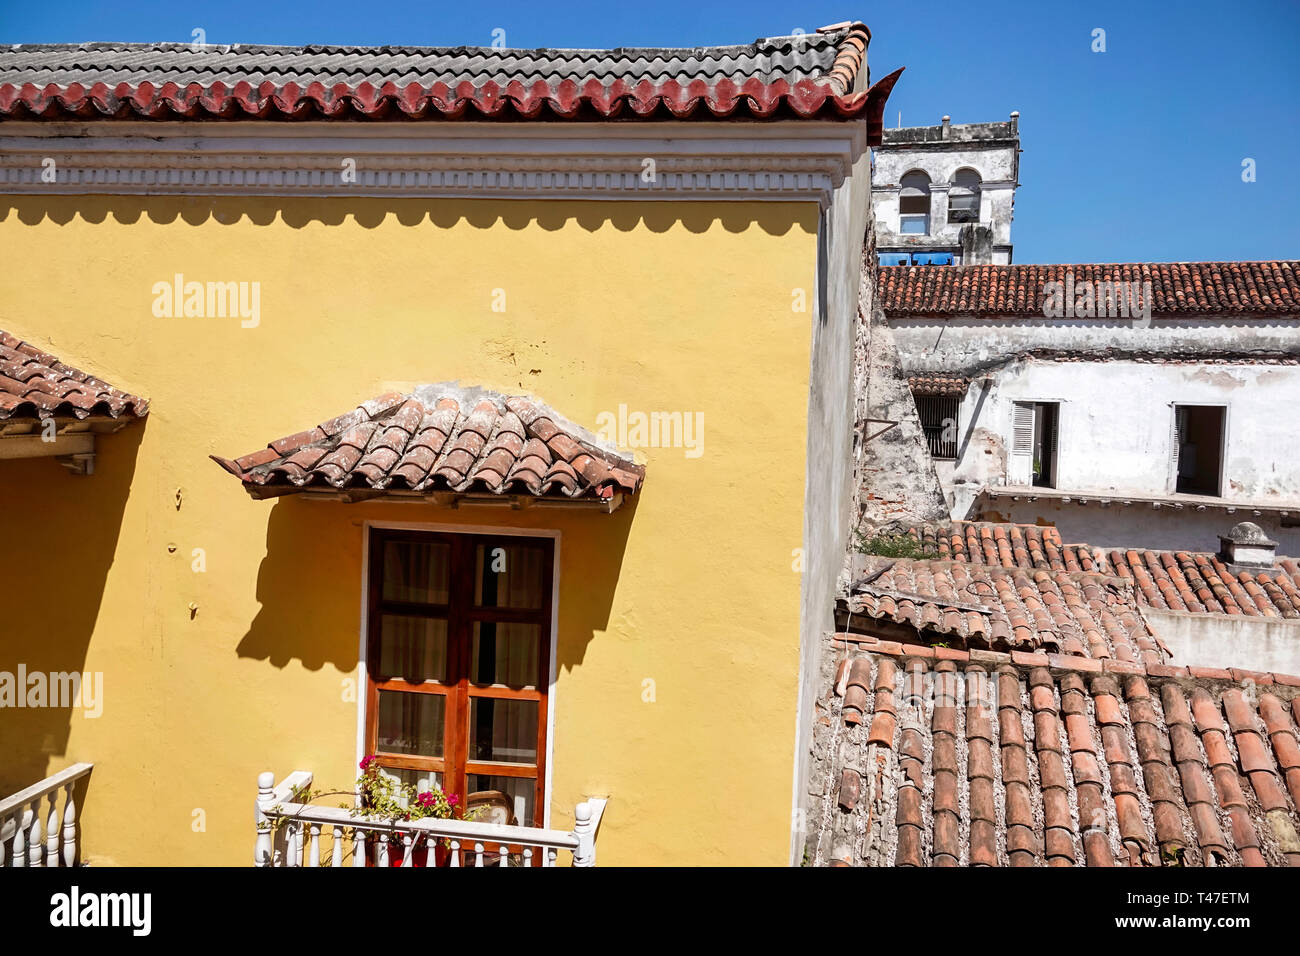 Cartagena Colombia,architettura coloniale,tegole in terracotta ceramica,tetti,balcone,vecchio,COL190122049 Foto Stock